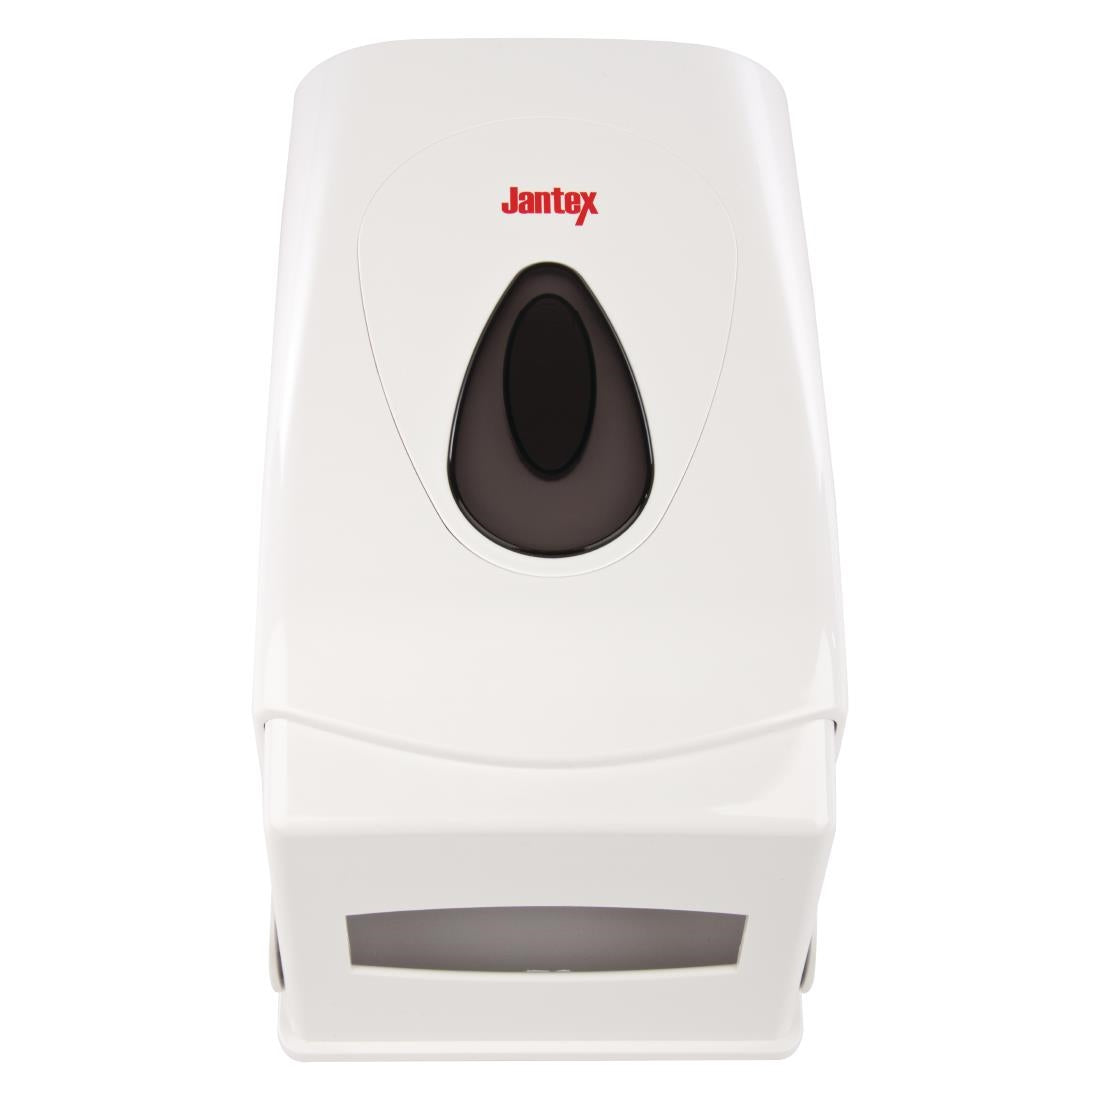 Jantex Toilet Tissue Dispenser